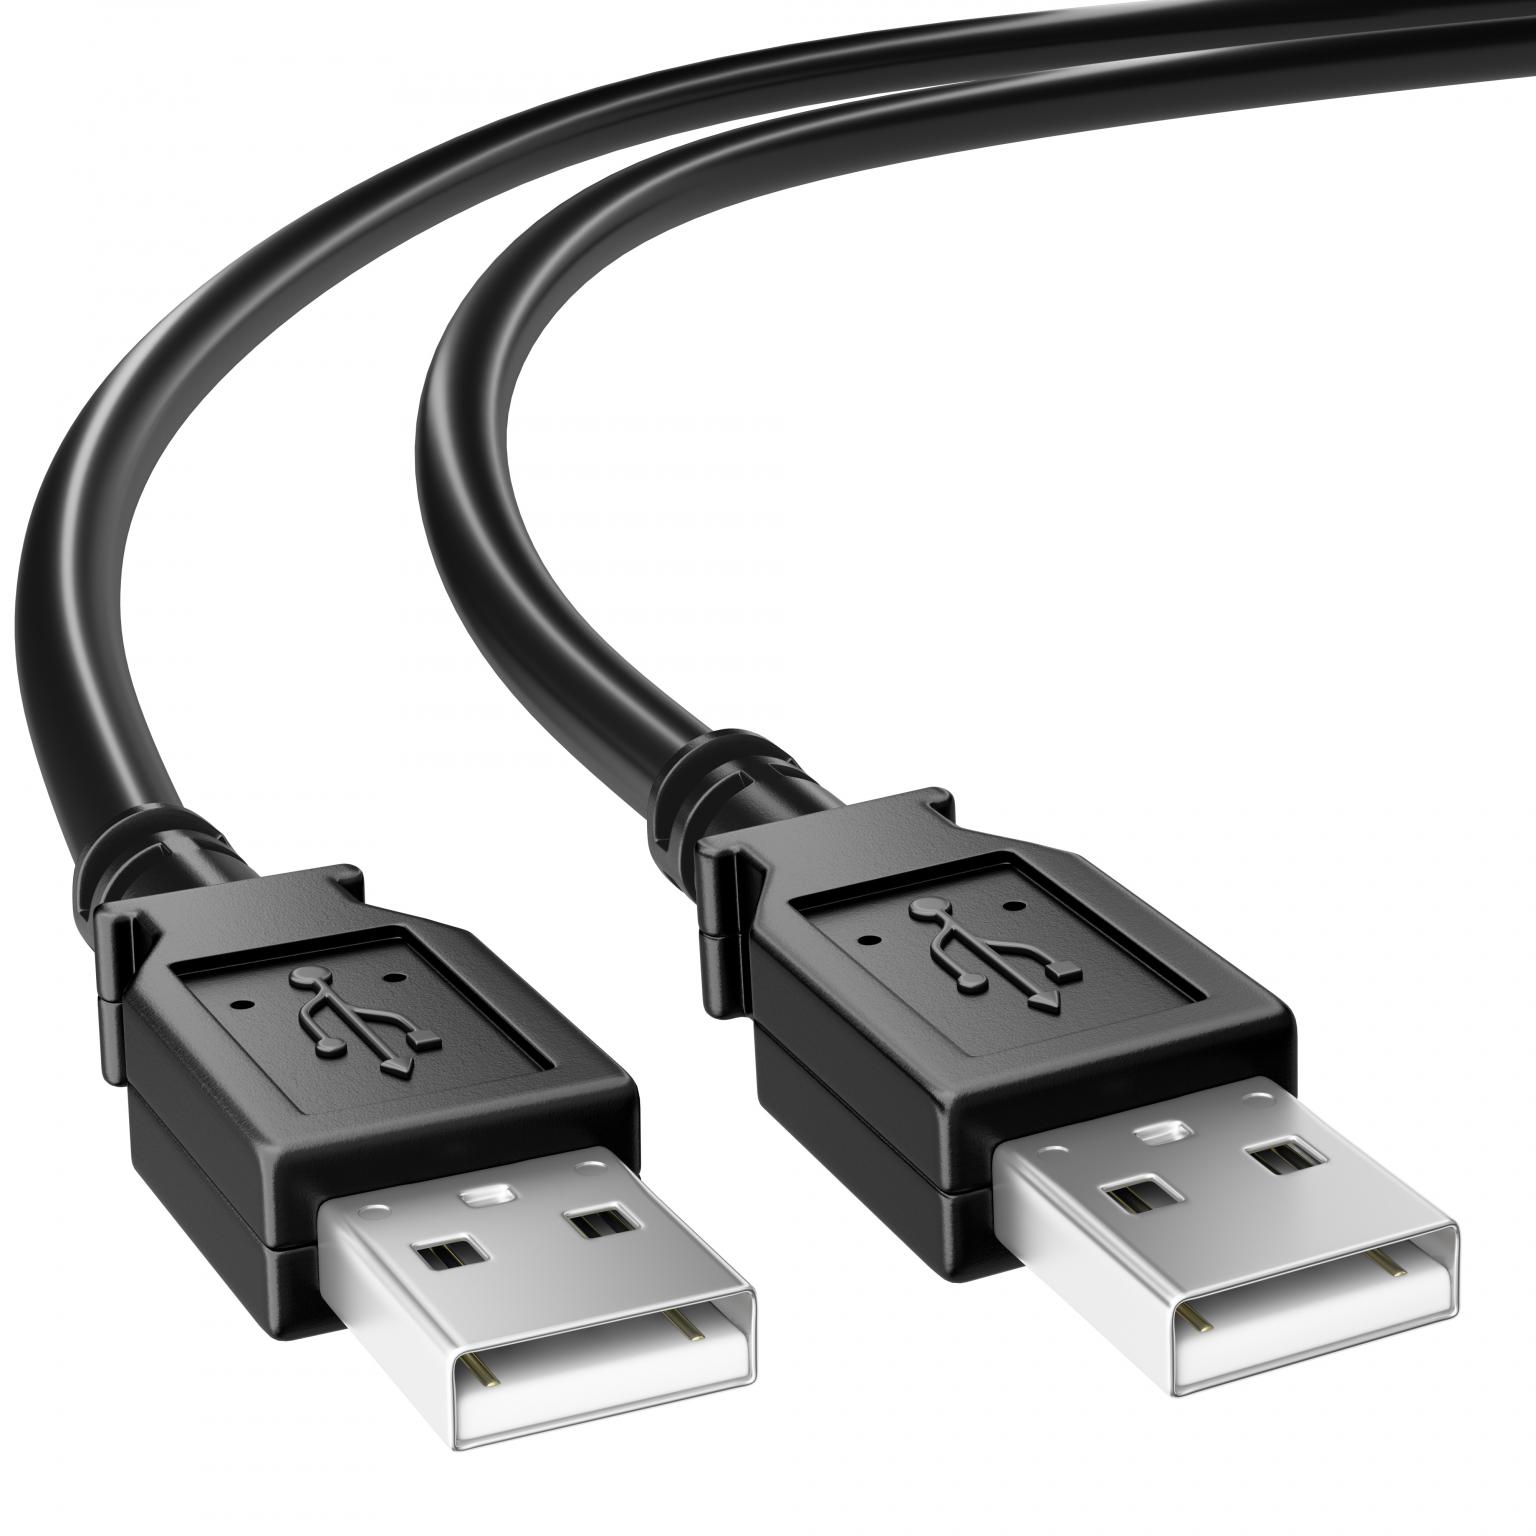 dood optie nogmaals USB 2.0 Kabel A male - A male 1.00 m Zwart - USB A naar USB A Kabel -  Zwart, Versie: 2.0 - High Speed, Aansluiting 1: USB A male, Aansluiting 2: USB  A male 1 meter.